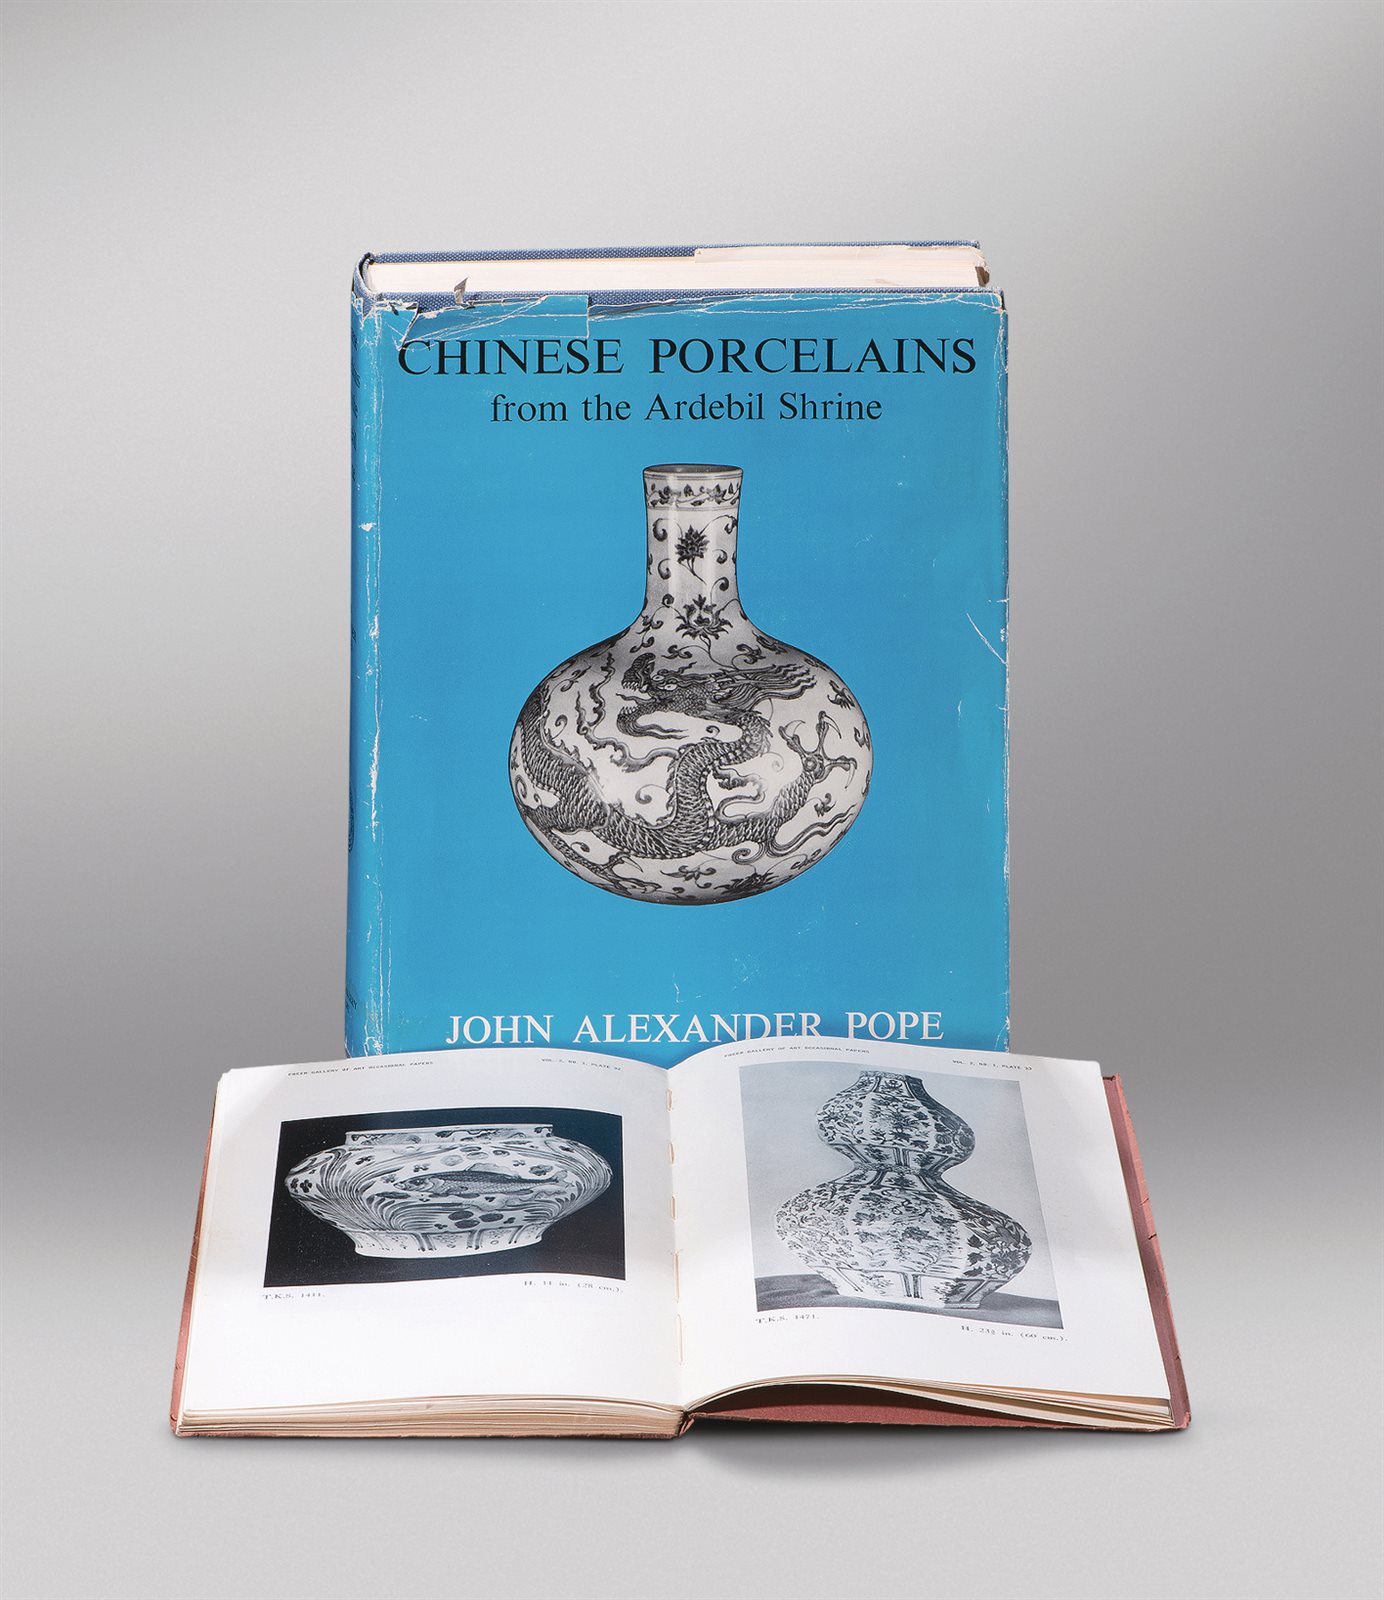 《十四世纪青花瓷·伊斯坦布尔托普卡比博物馆藏中国瓷器》
《阿德比尔寺收藏中国陶瓷》
